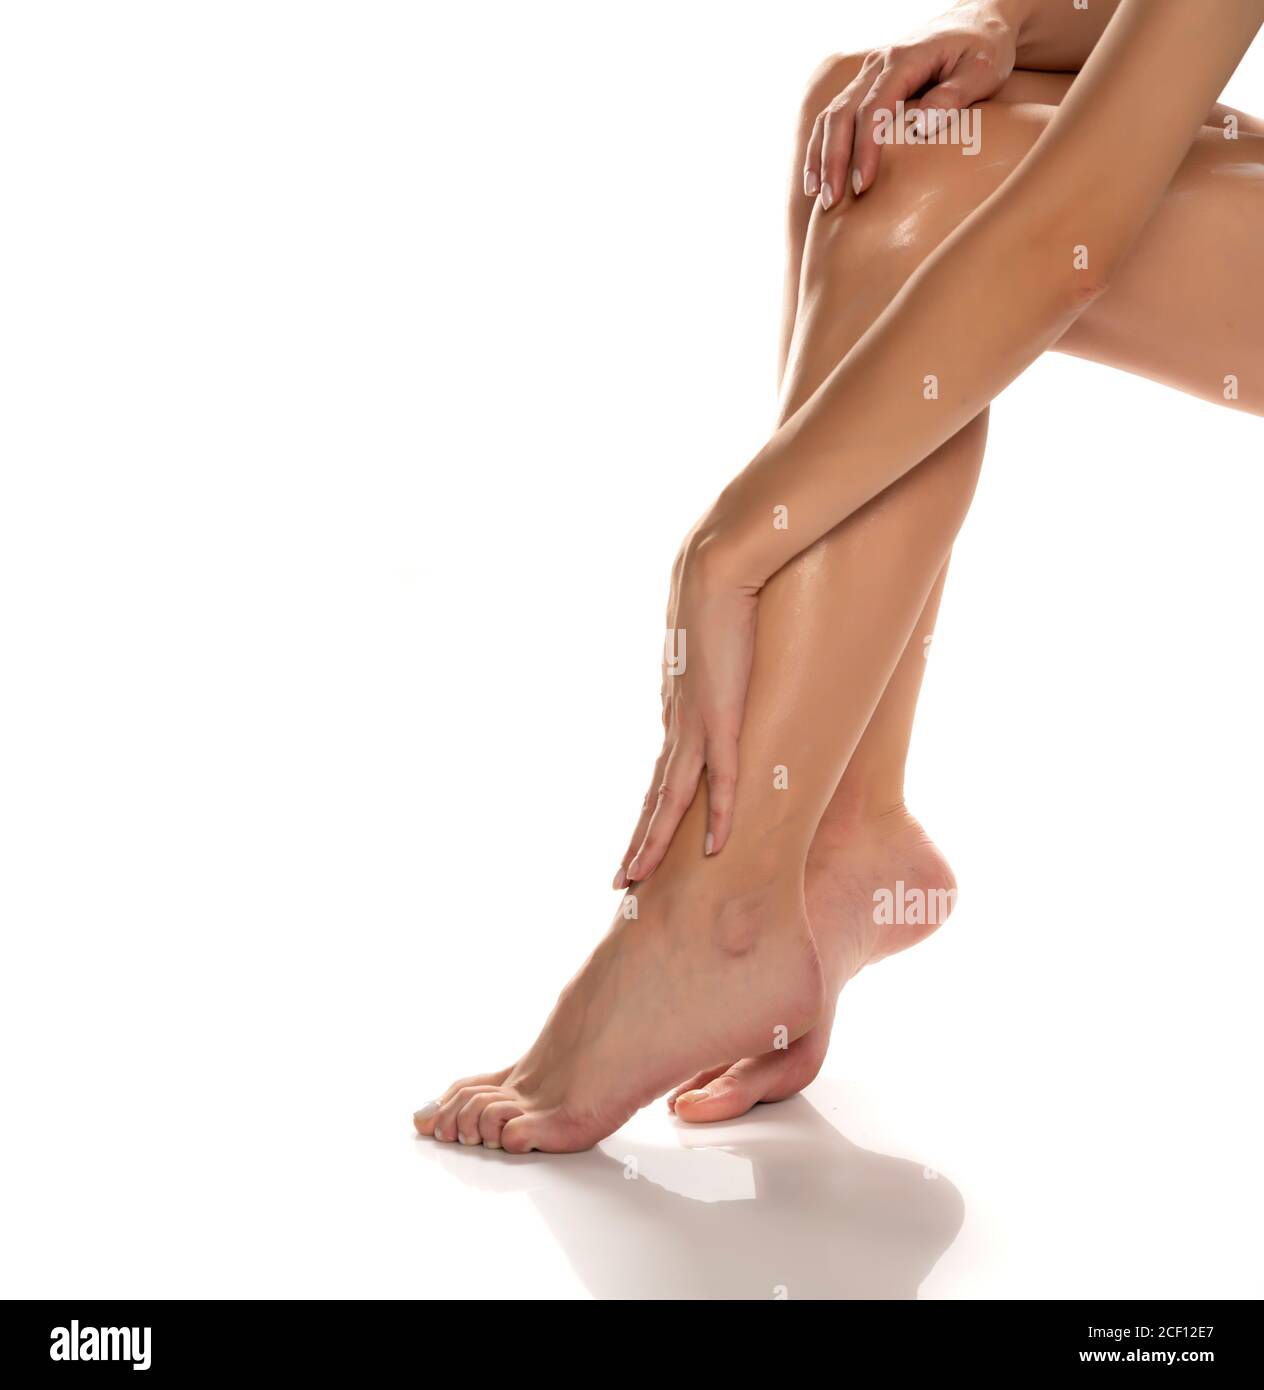 femme appliquant de la lotion sur ses jambes sur fond blanc Banque D'Images